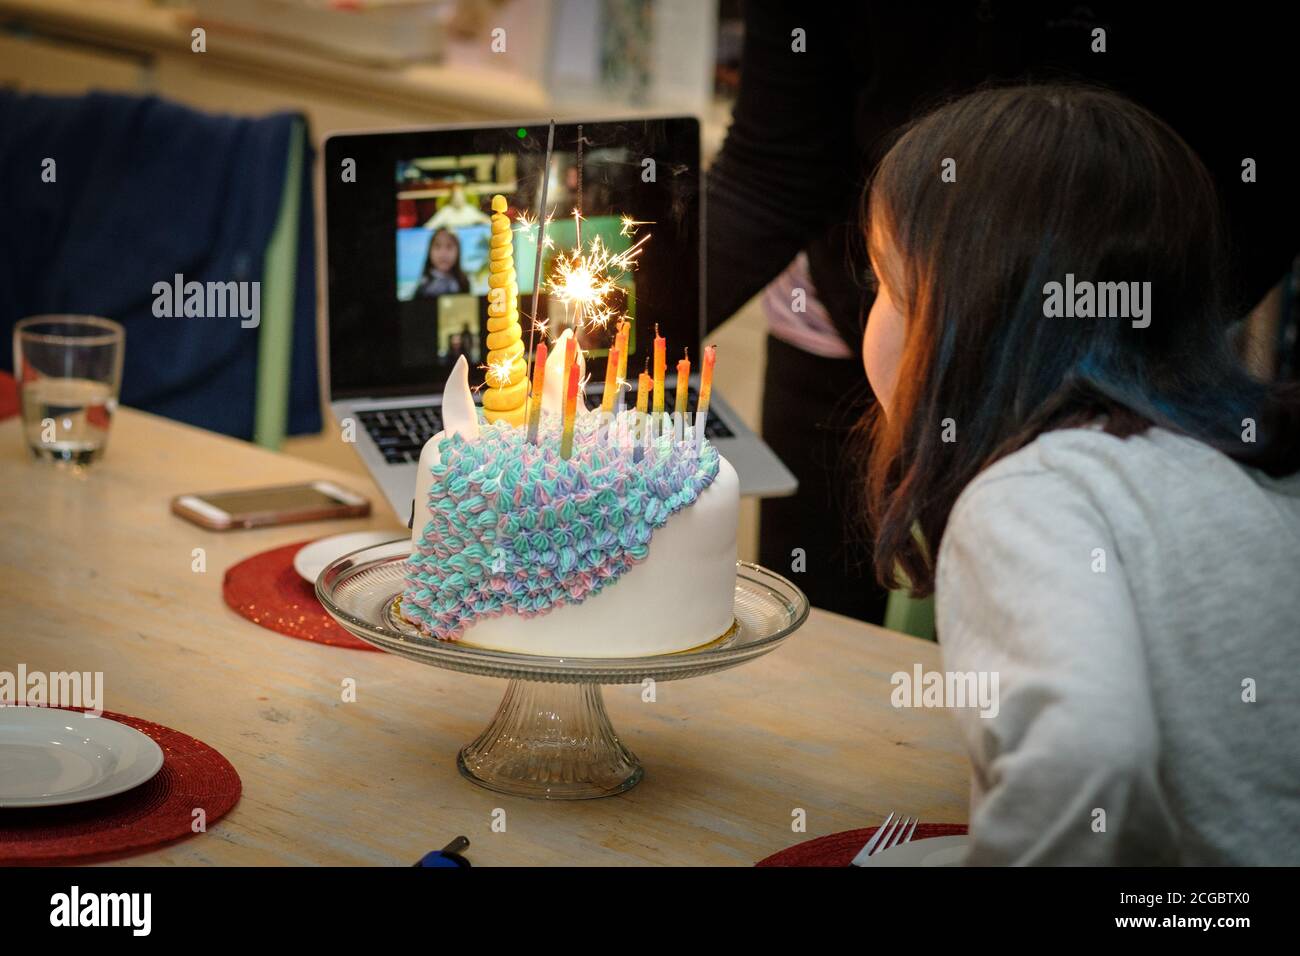 Une fête d'anniversaire d'enfant se tient en ligne (Zoom) pendant le confinement de COVID-19, Melbourne Australie Banque D'Images